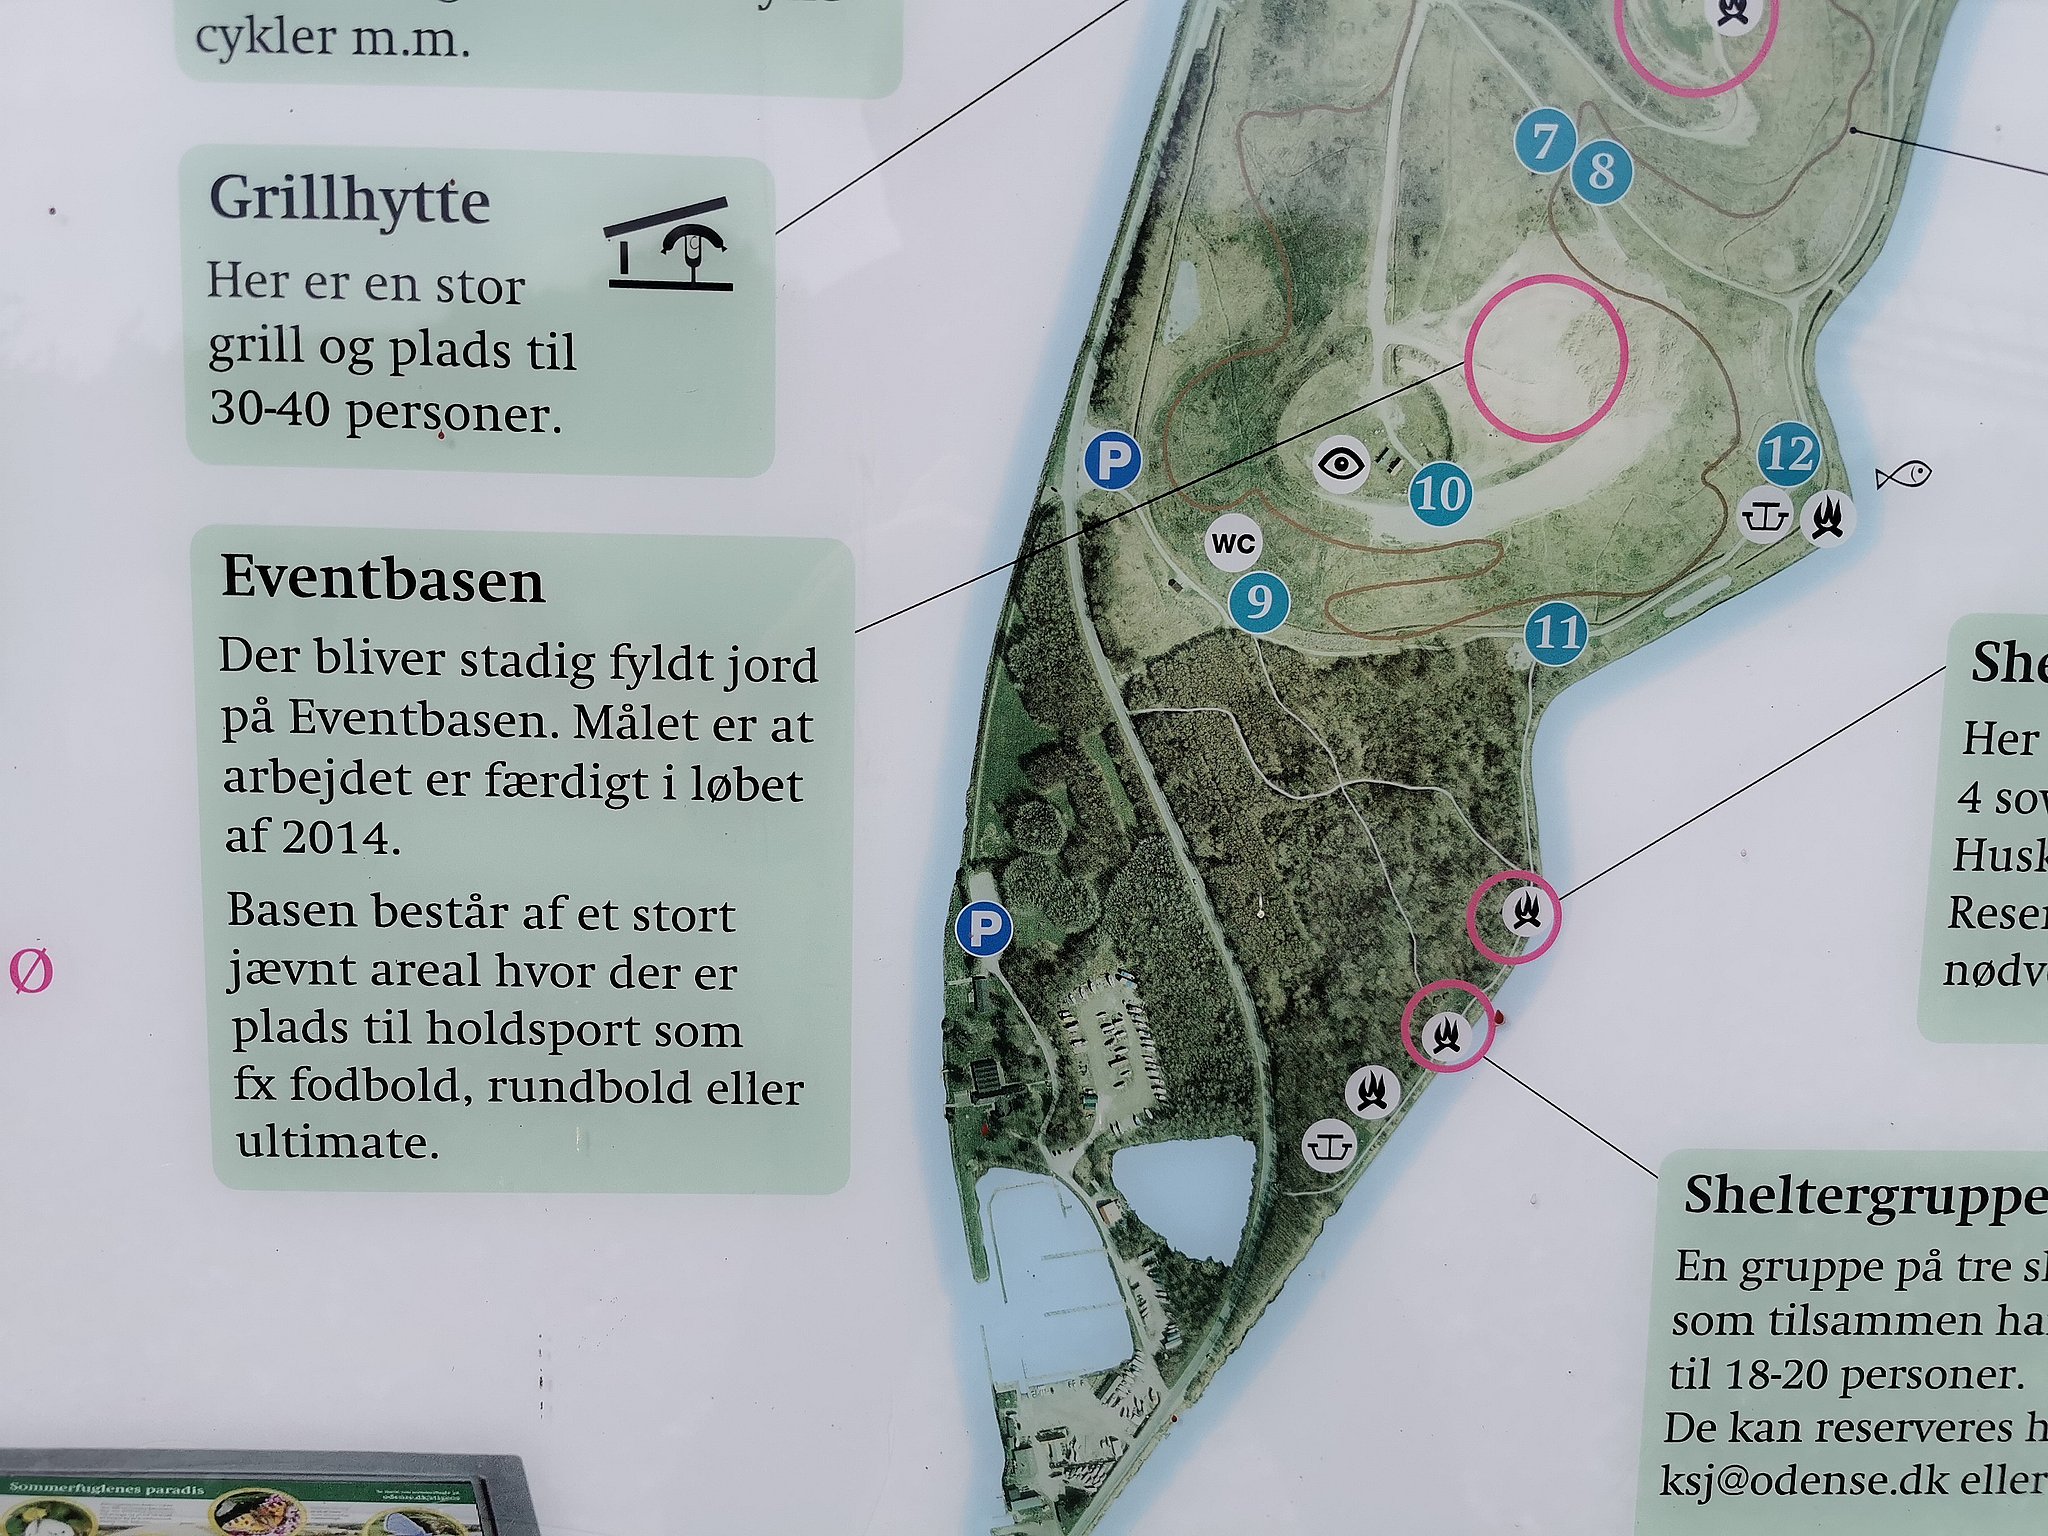 I ti år har Martin haft Søpavillonen på Stige Ø – stadig på kommunens planer bliver til noget | TV2 Fyn